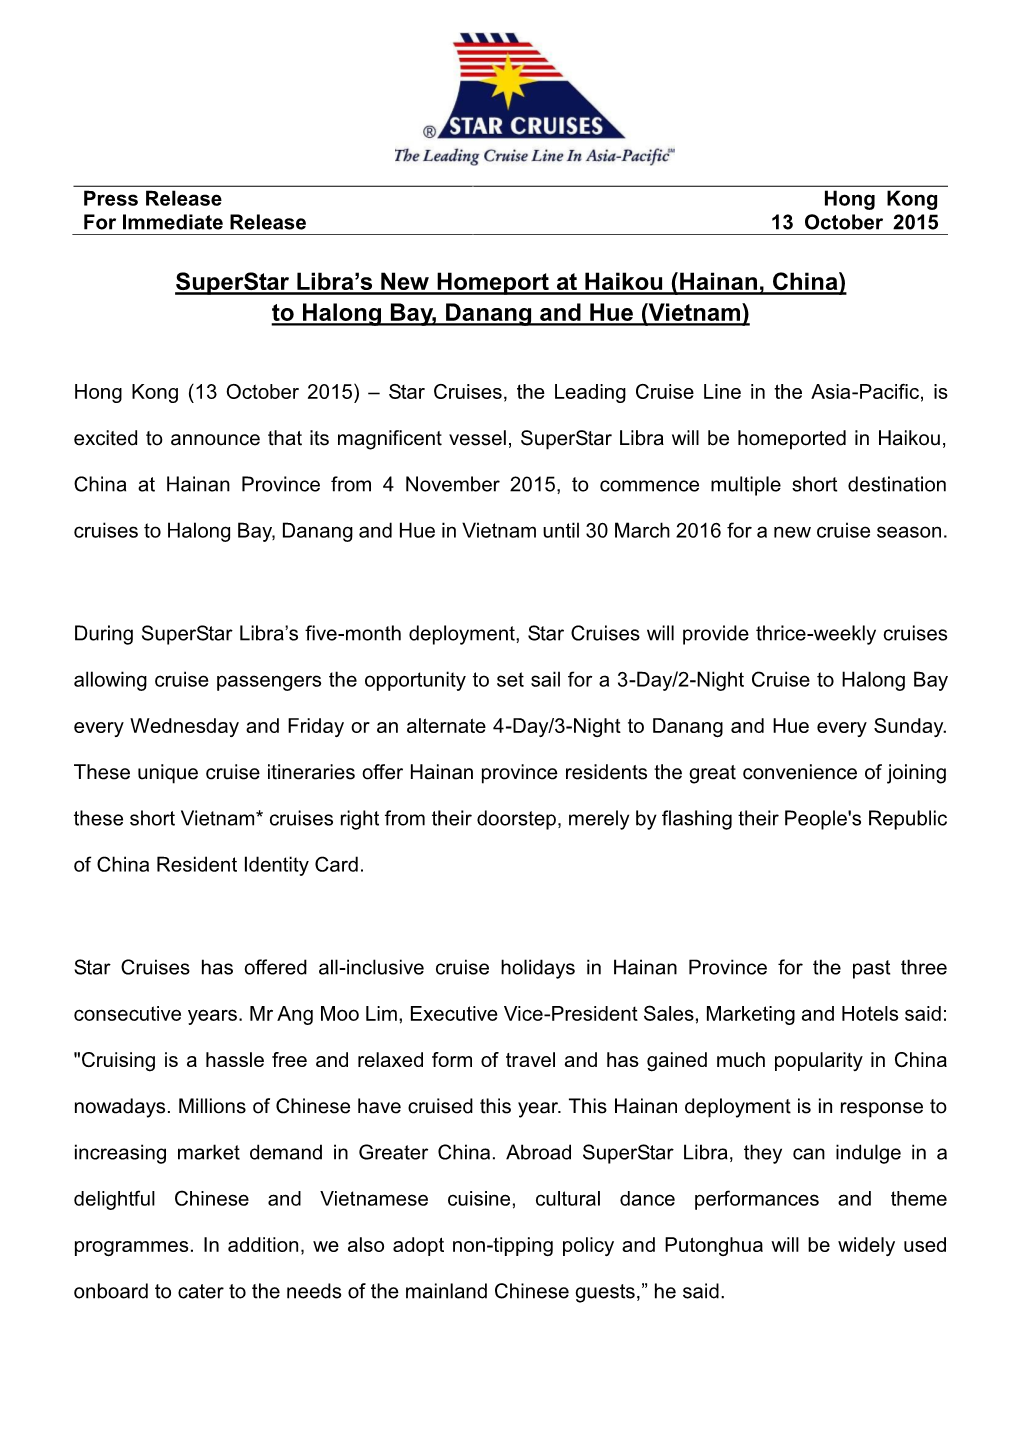 Superstar Libra's New Homeport at Haikou (Hainan, China) to Halong